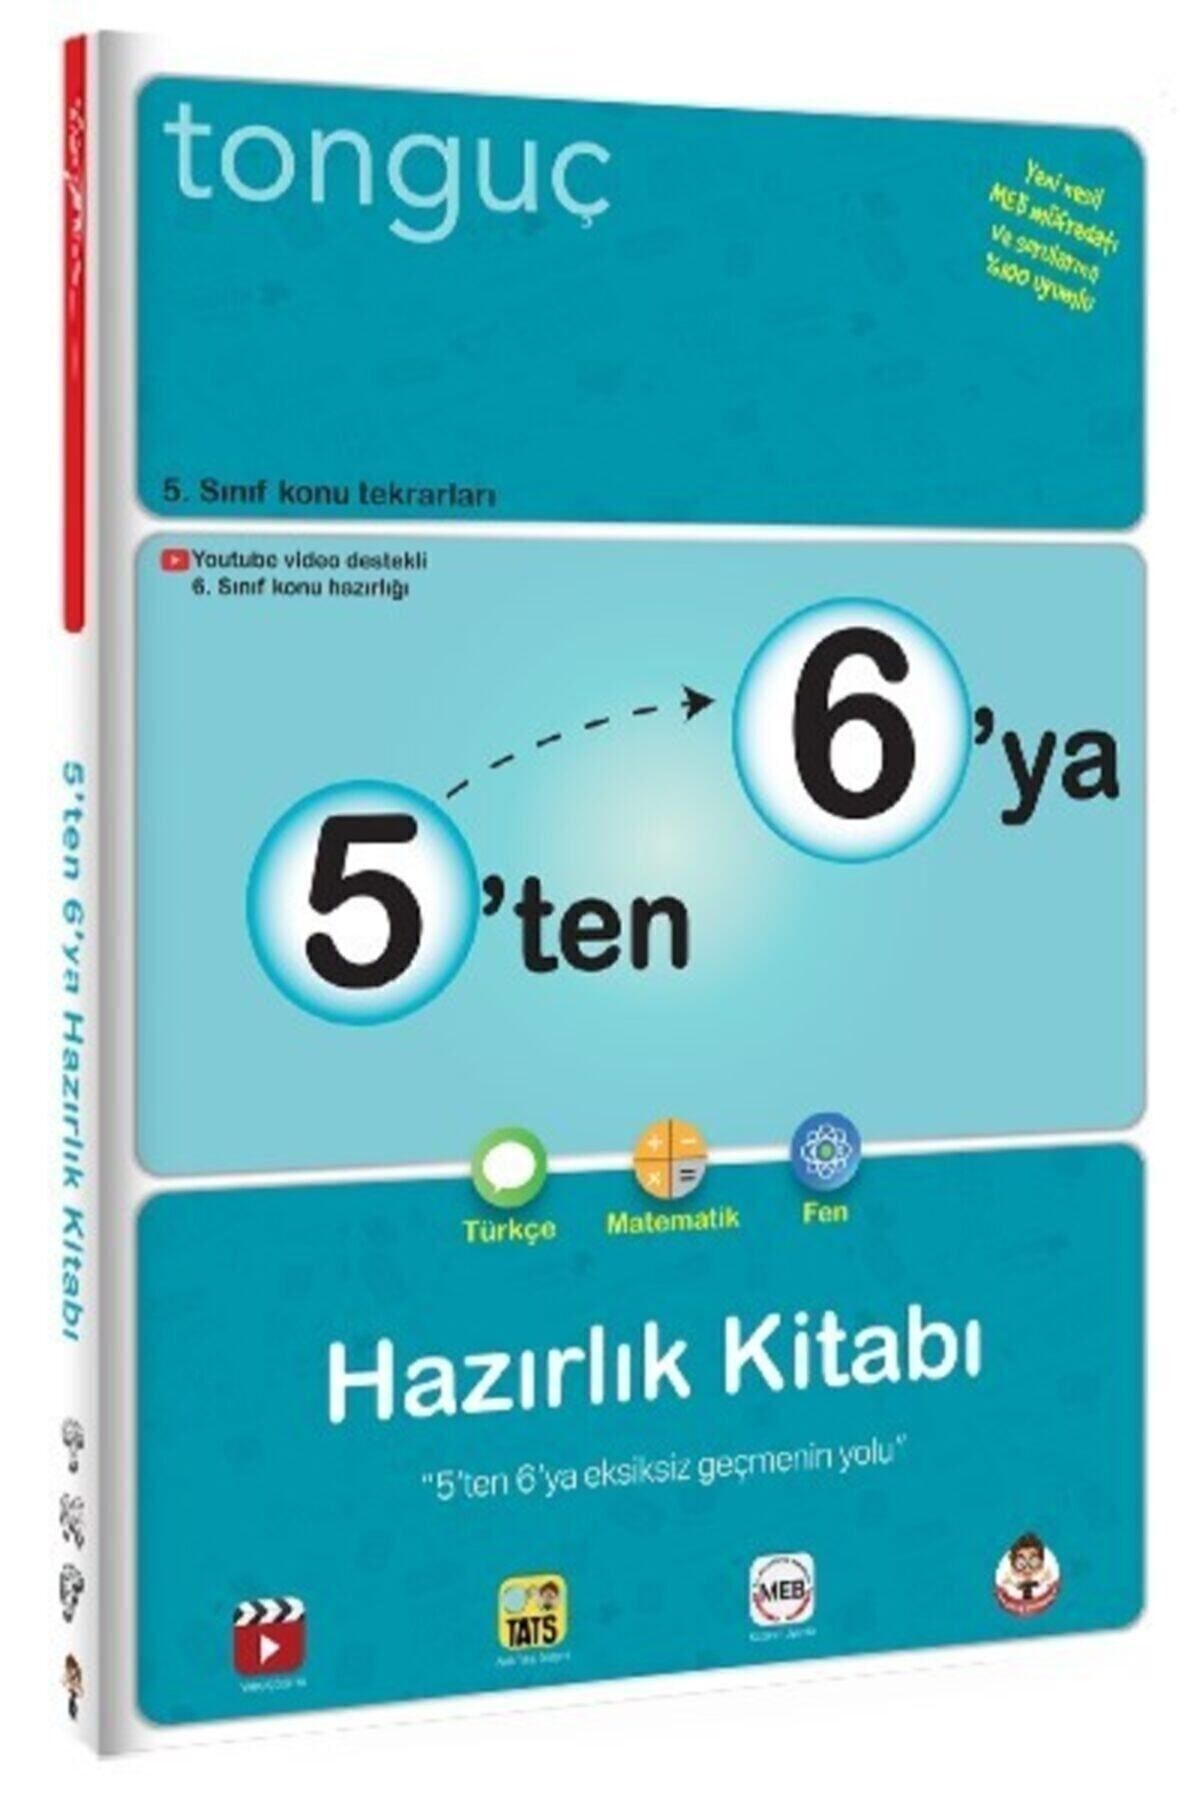 Tonguç Yayınları 5 Ten 6 Ya Hazırlık Kitabı